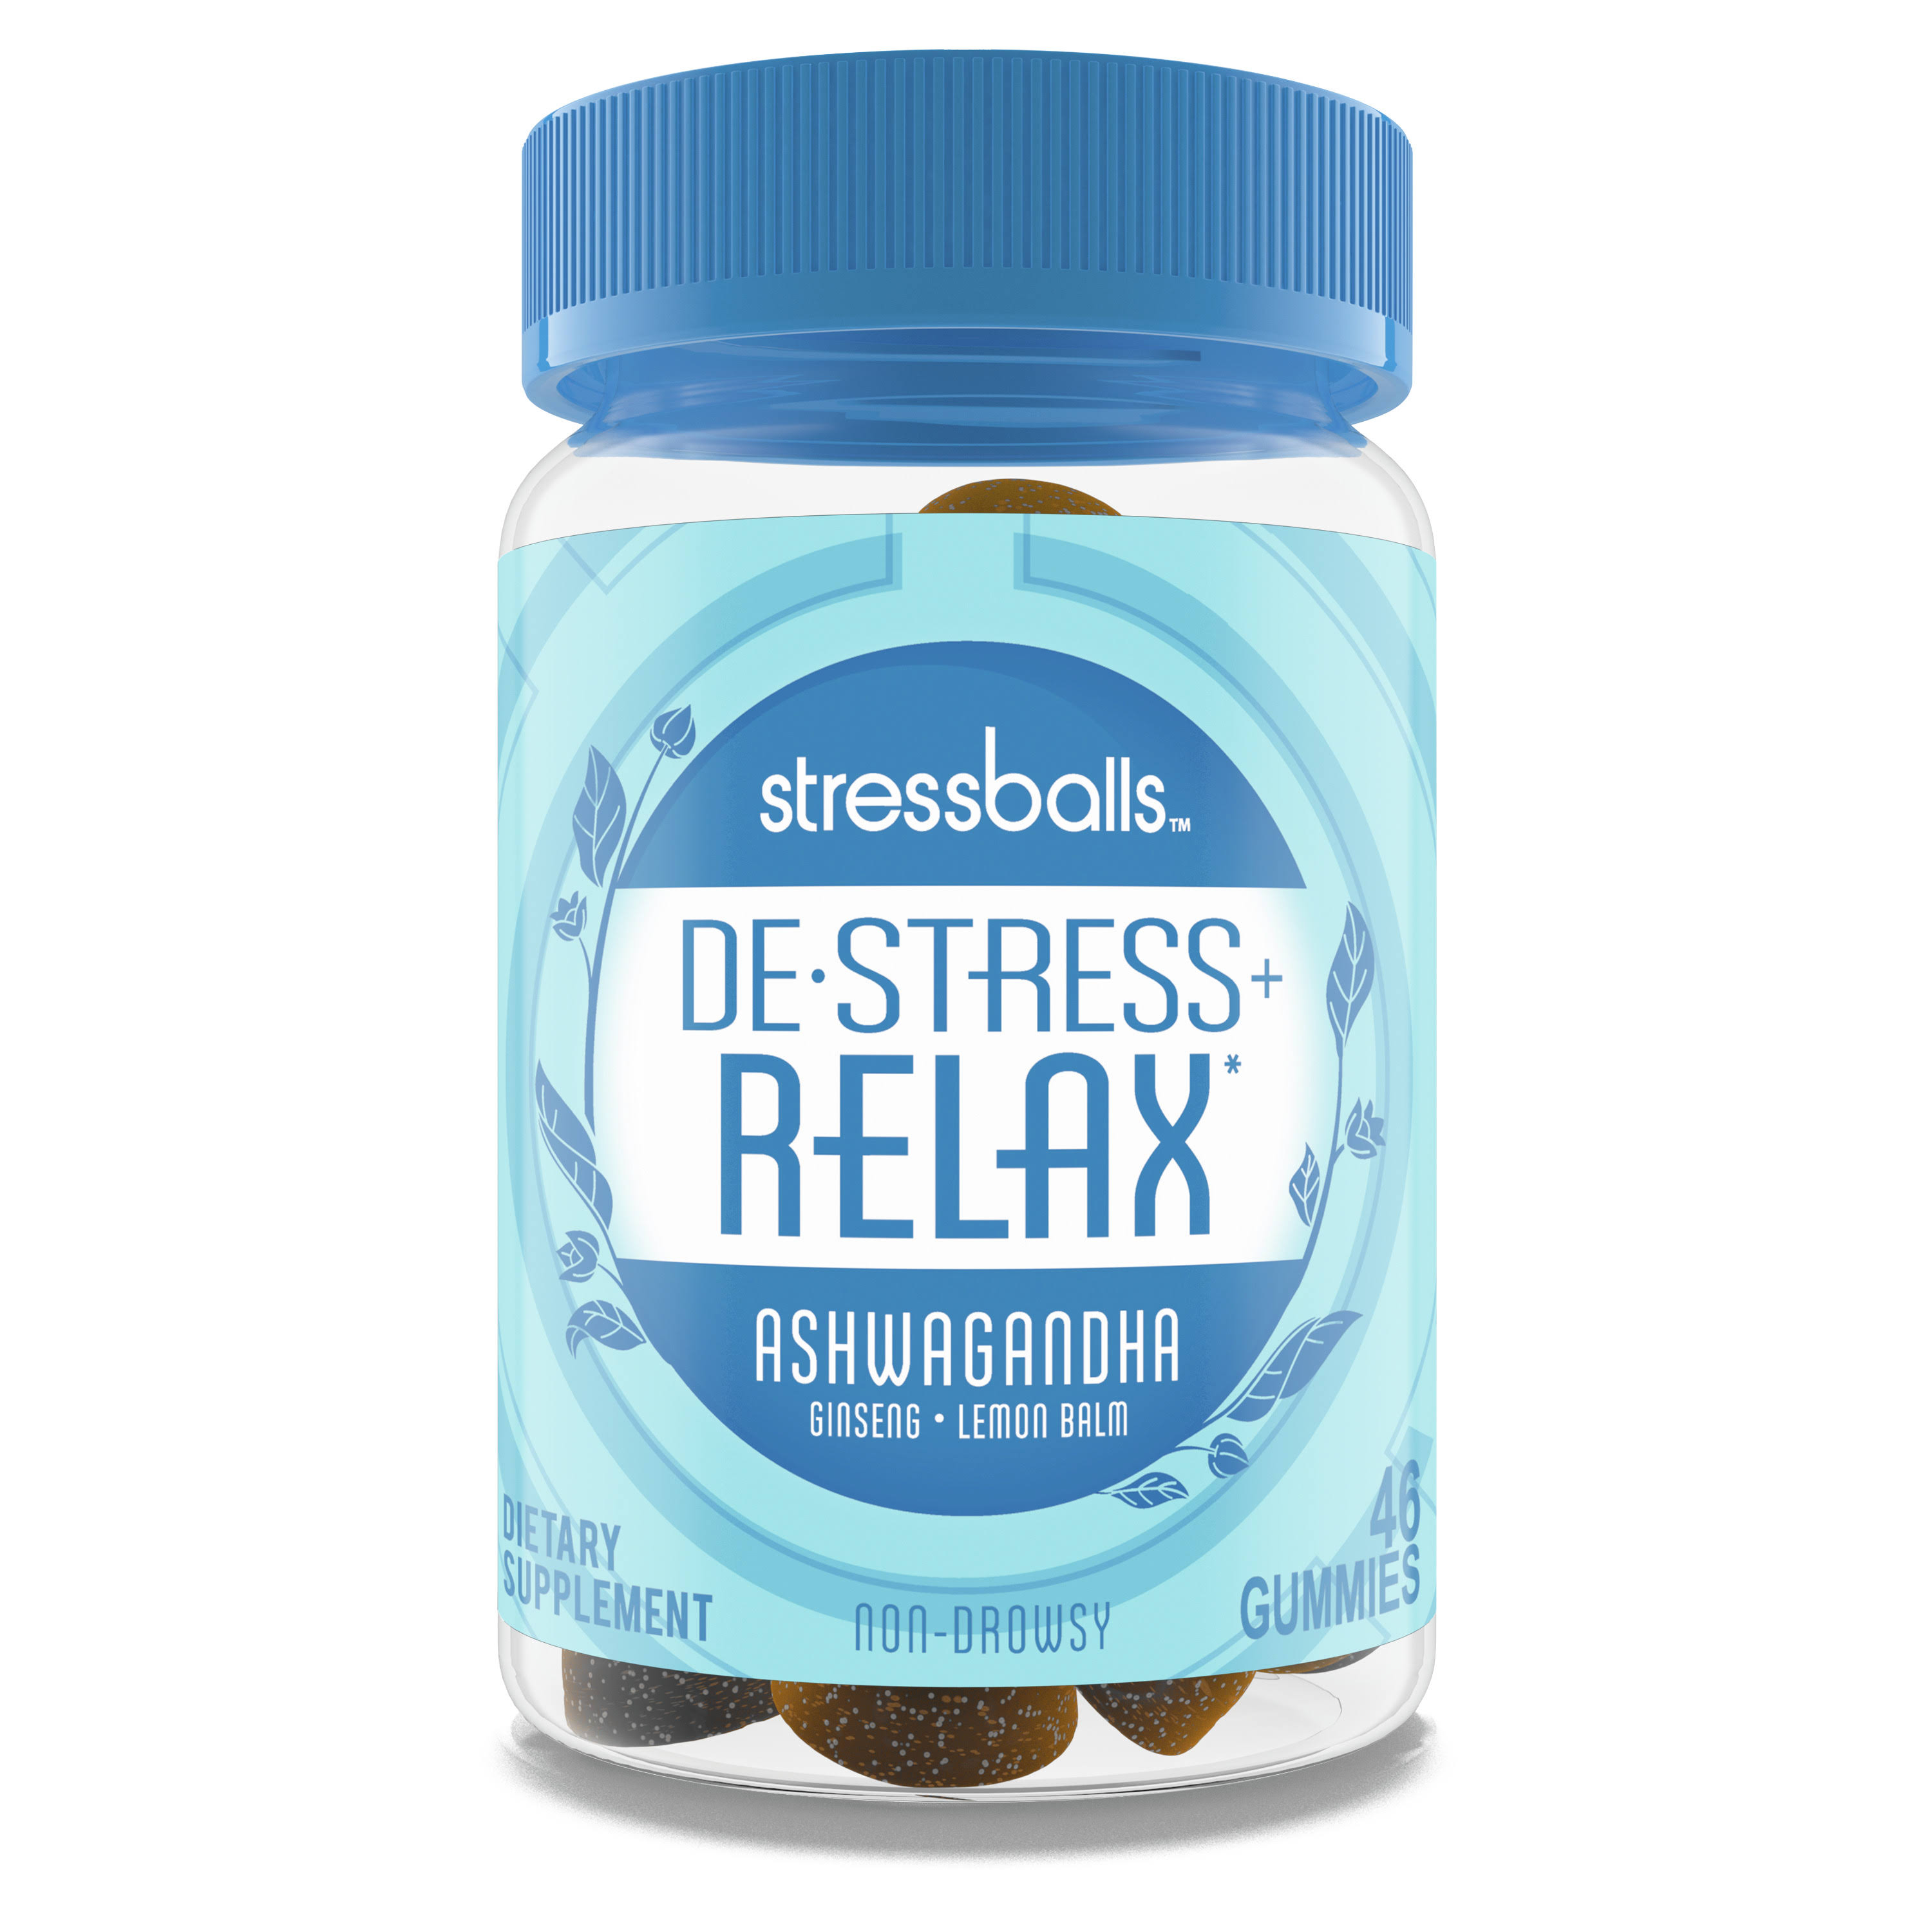 Stressballs De-Stress + Relax, Ashwagandha, Gummies - 46 gummies